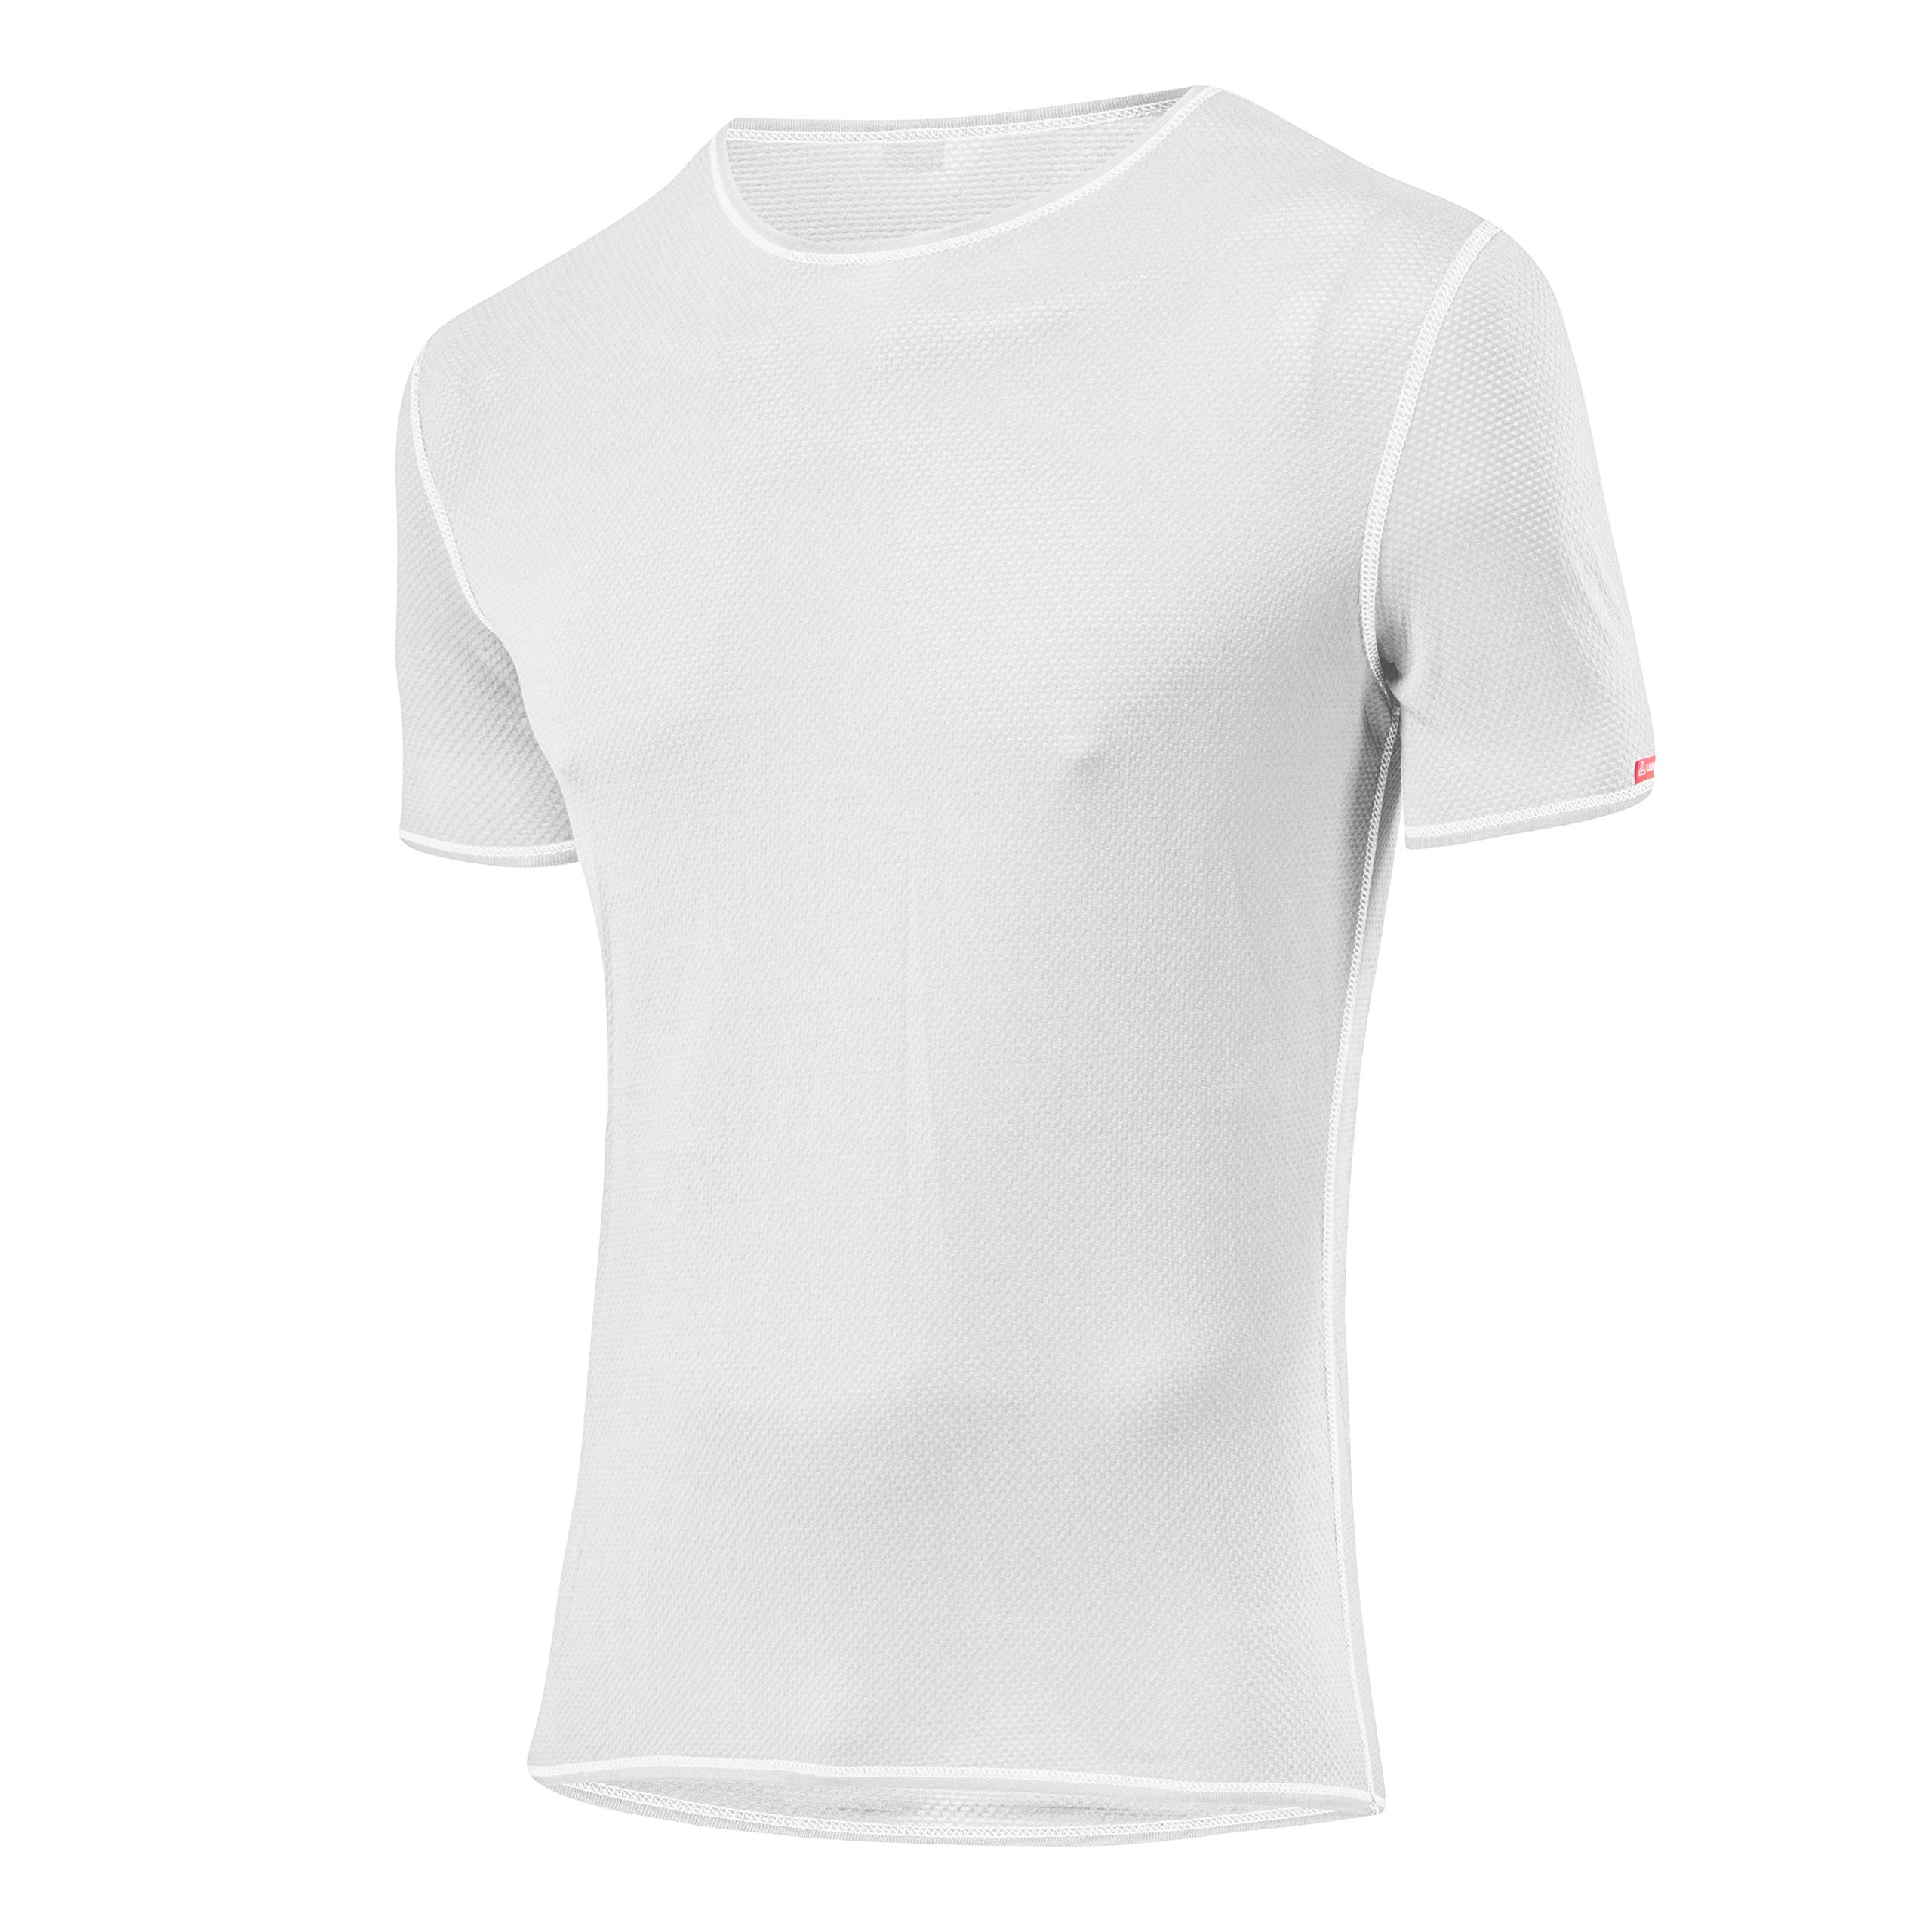 LÖFFLER Herren HR. KA TRANSTEX Light T-Shirt, Weiß, 52